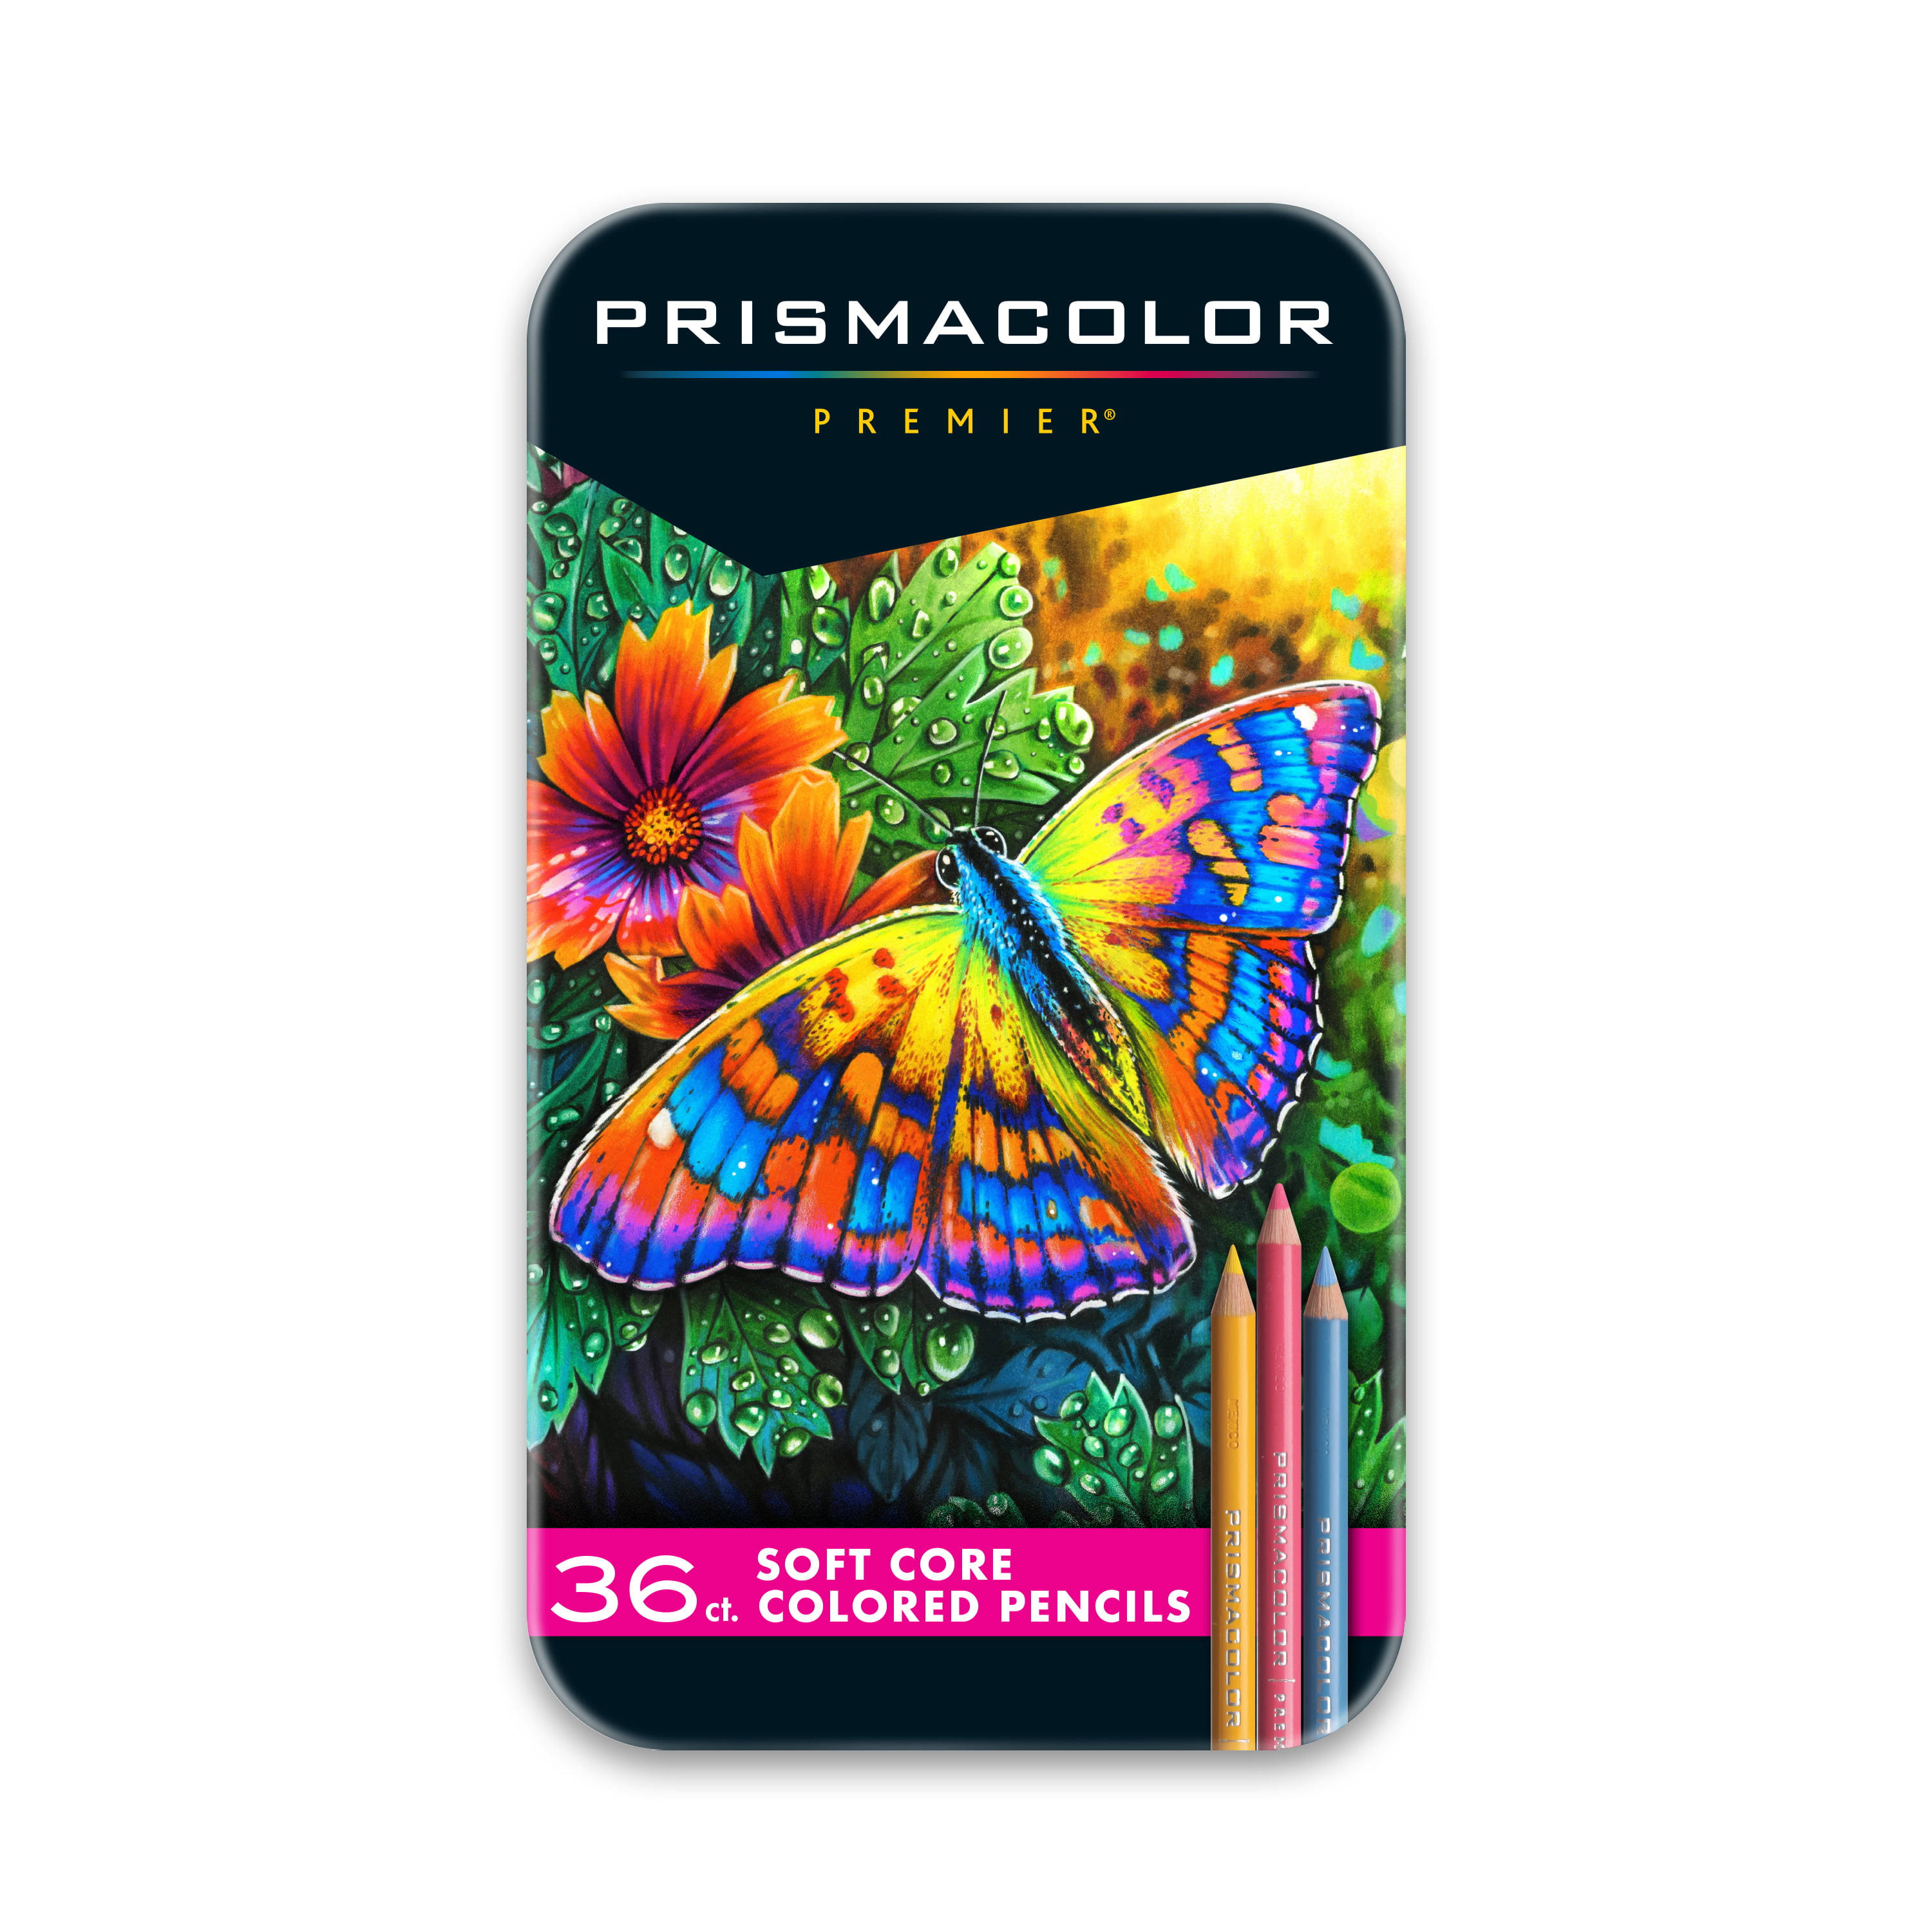 Prismacolor Premier Colored Pencils - 36 Pack, Assorted Colors